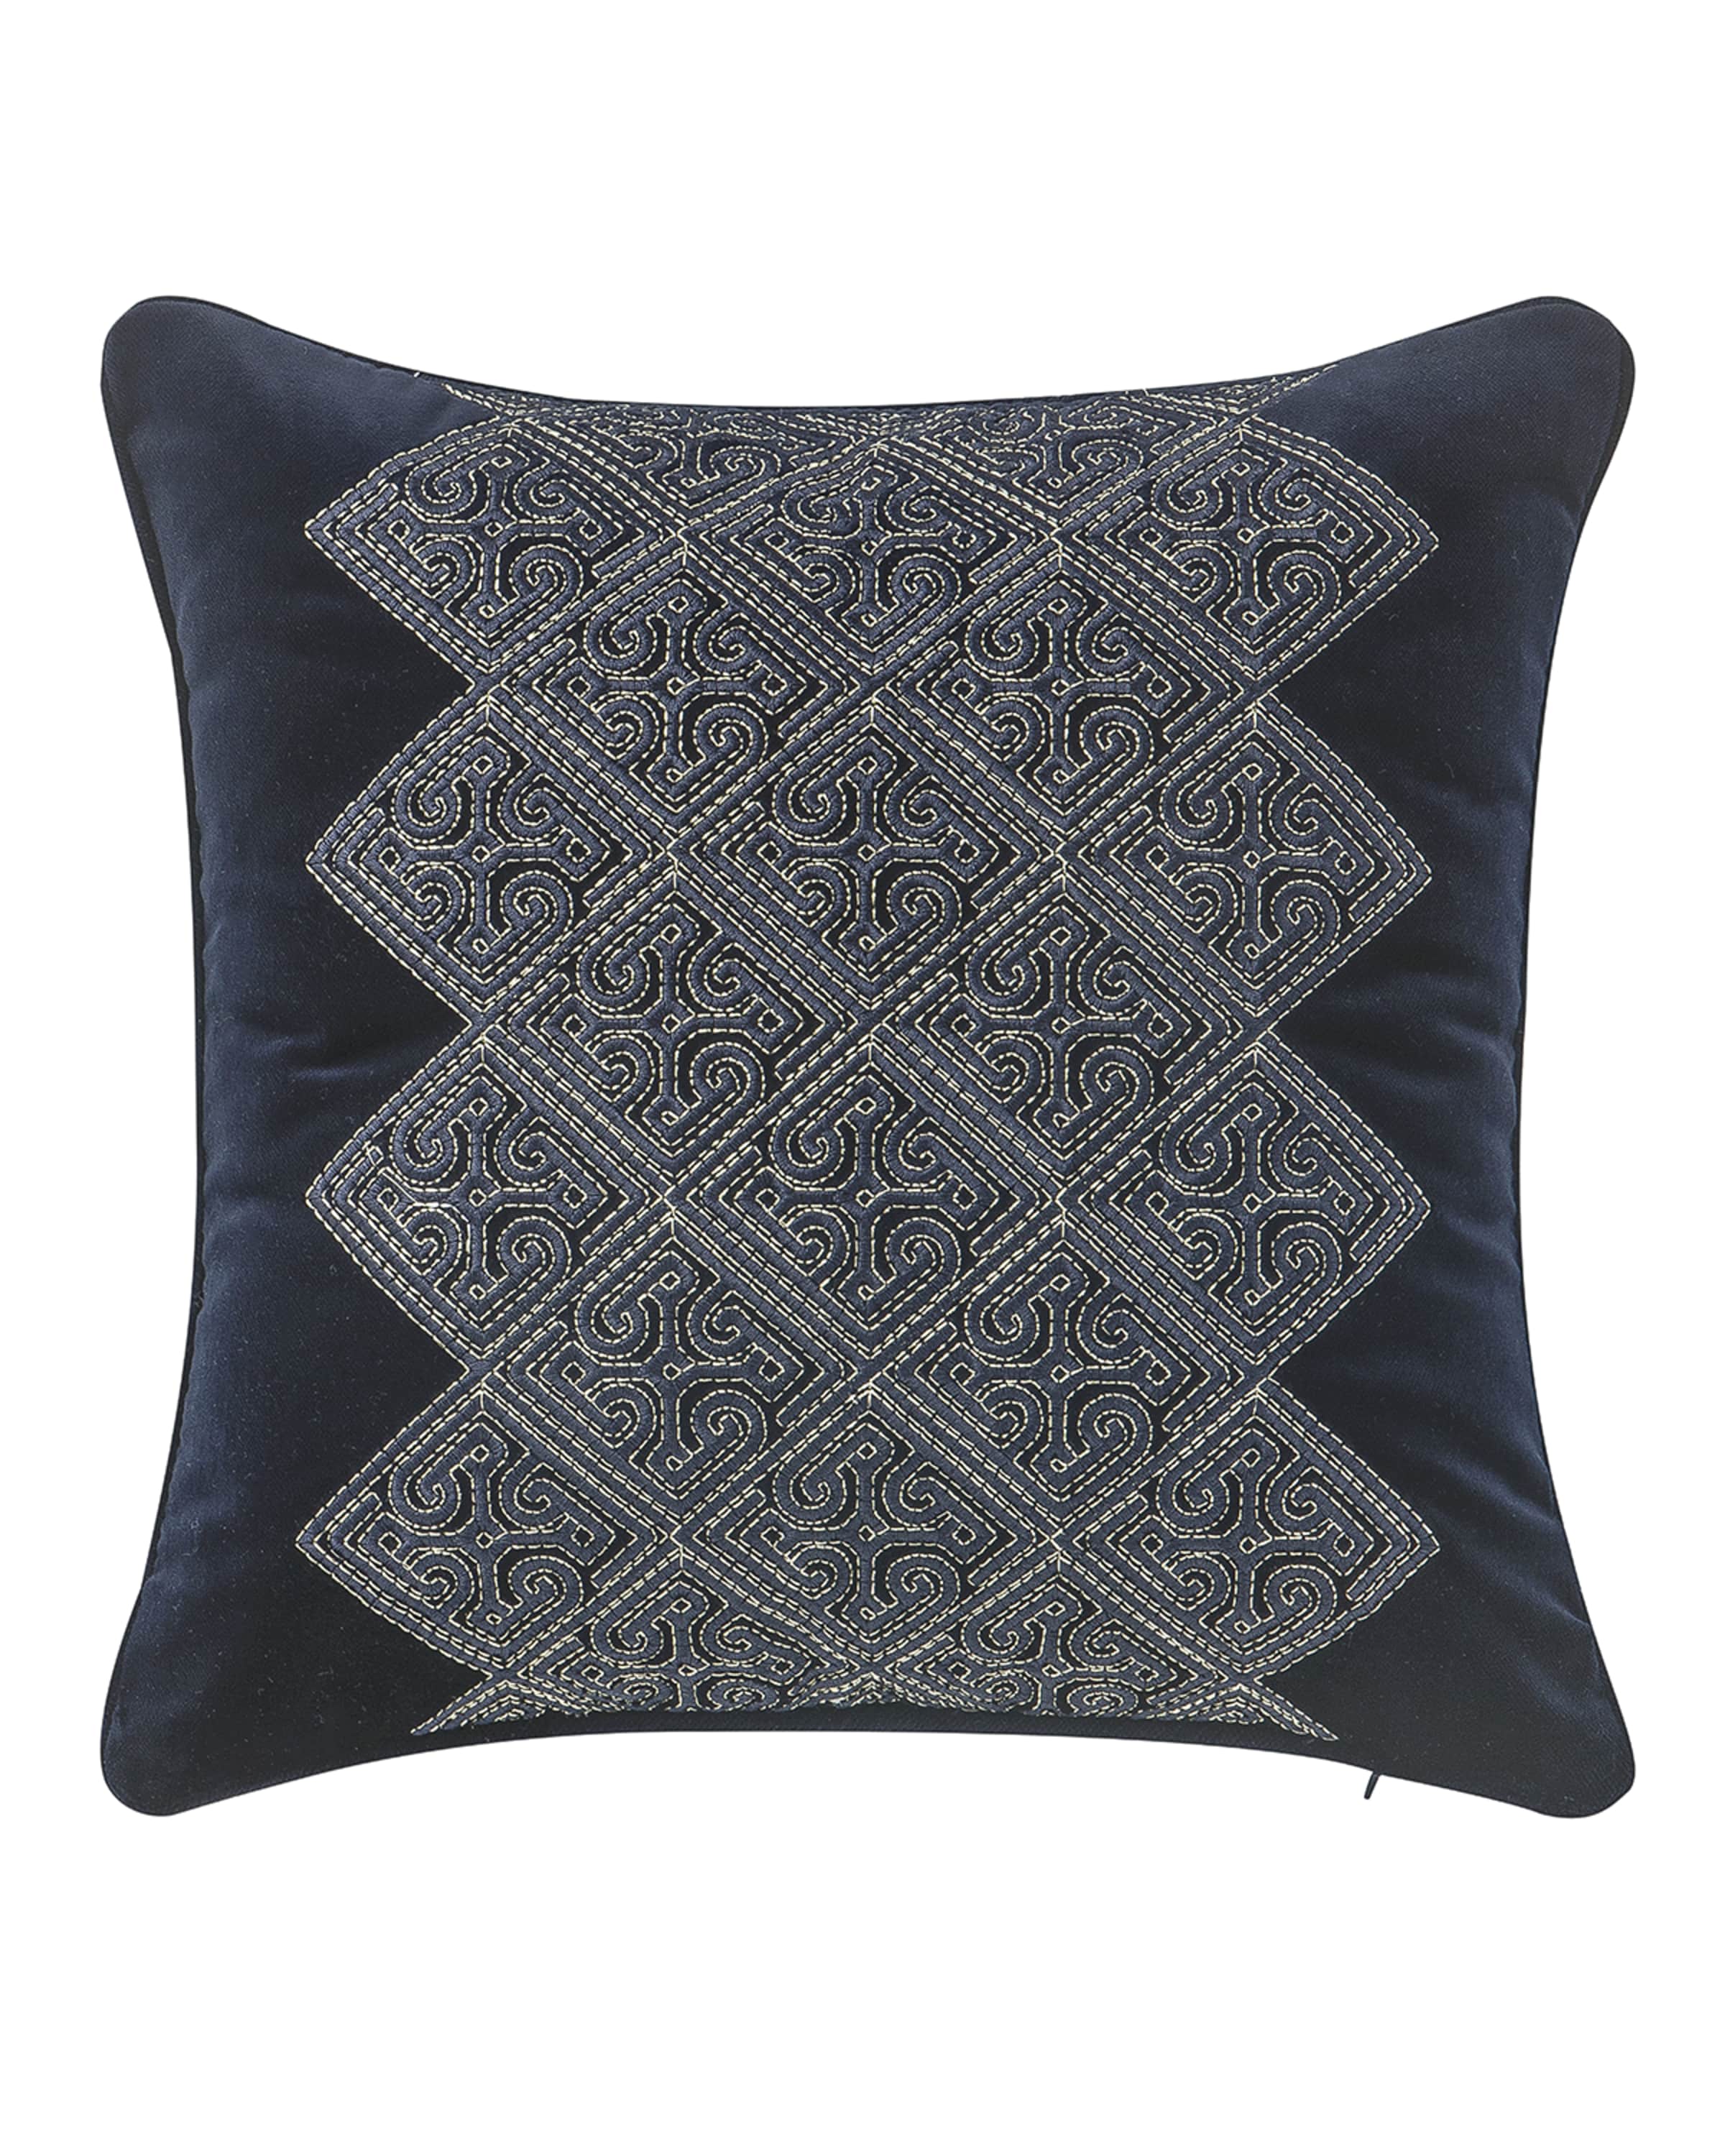 Waterford Leighton Decorative Pillow, 14"Sq.